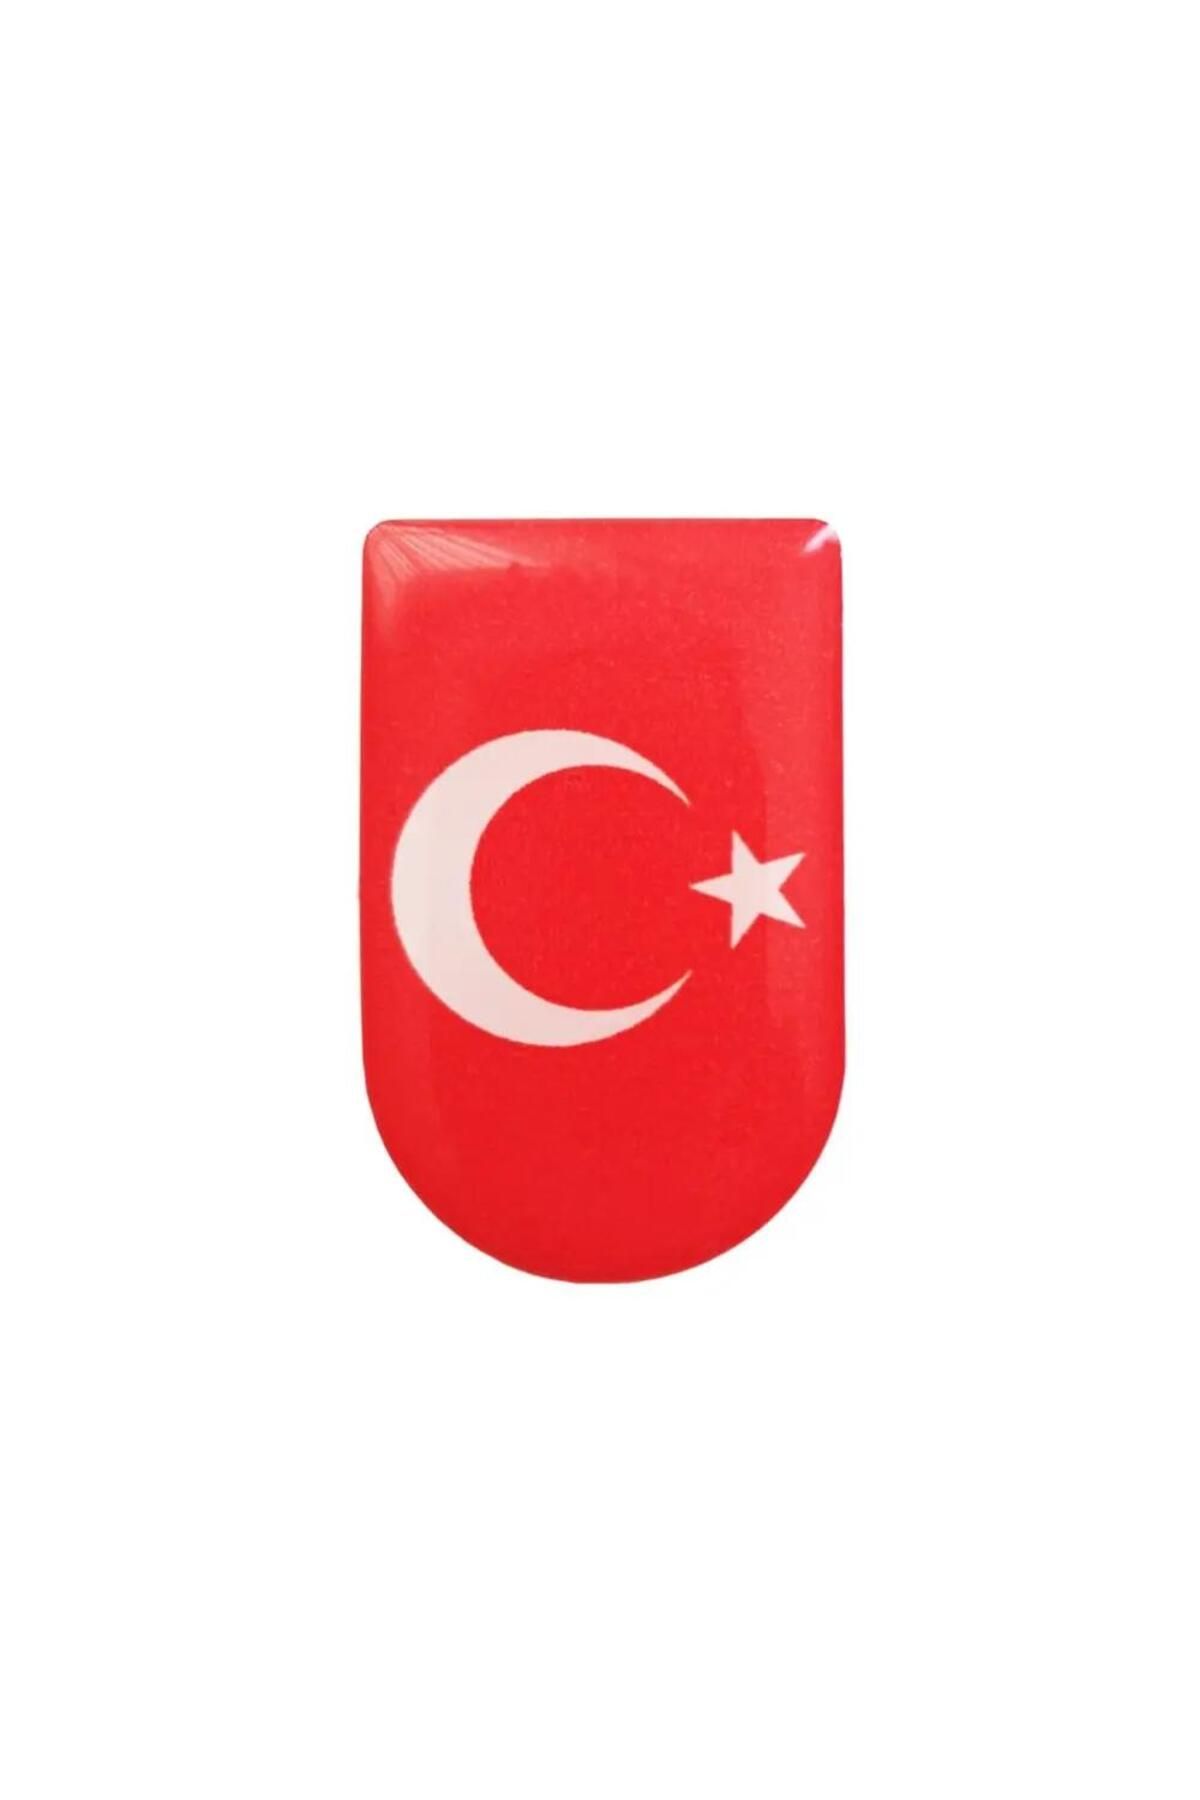 bahadırsilahcılık Türk Bayrak Şarjör Altı Sticker (8 adet )